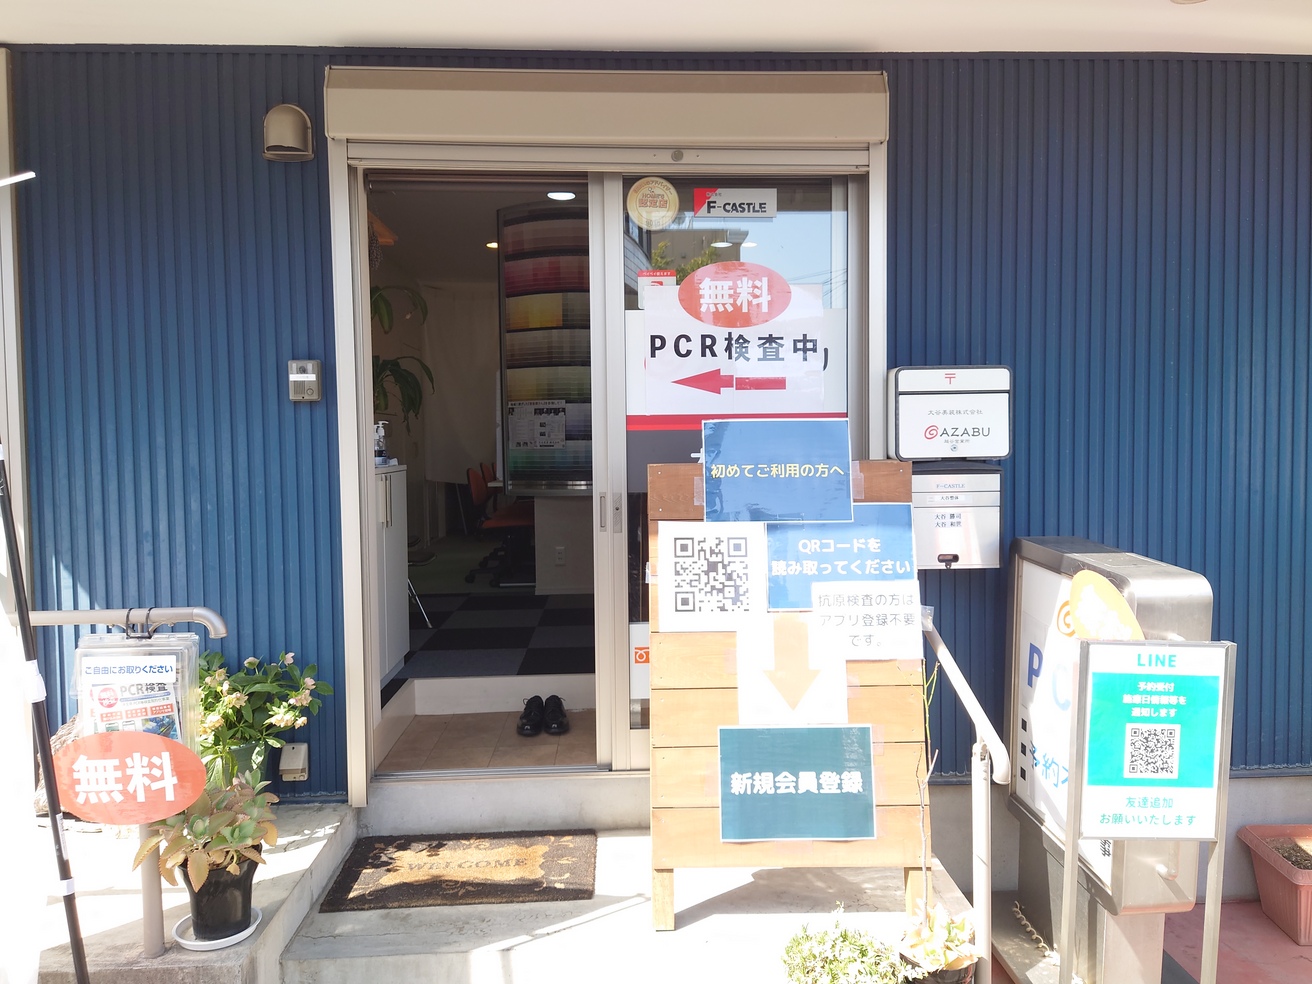 蒲生駅から徒歩7分のところに無料のPCR検査センターがオープンしたようです【がや...